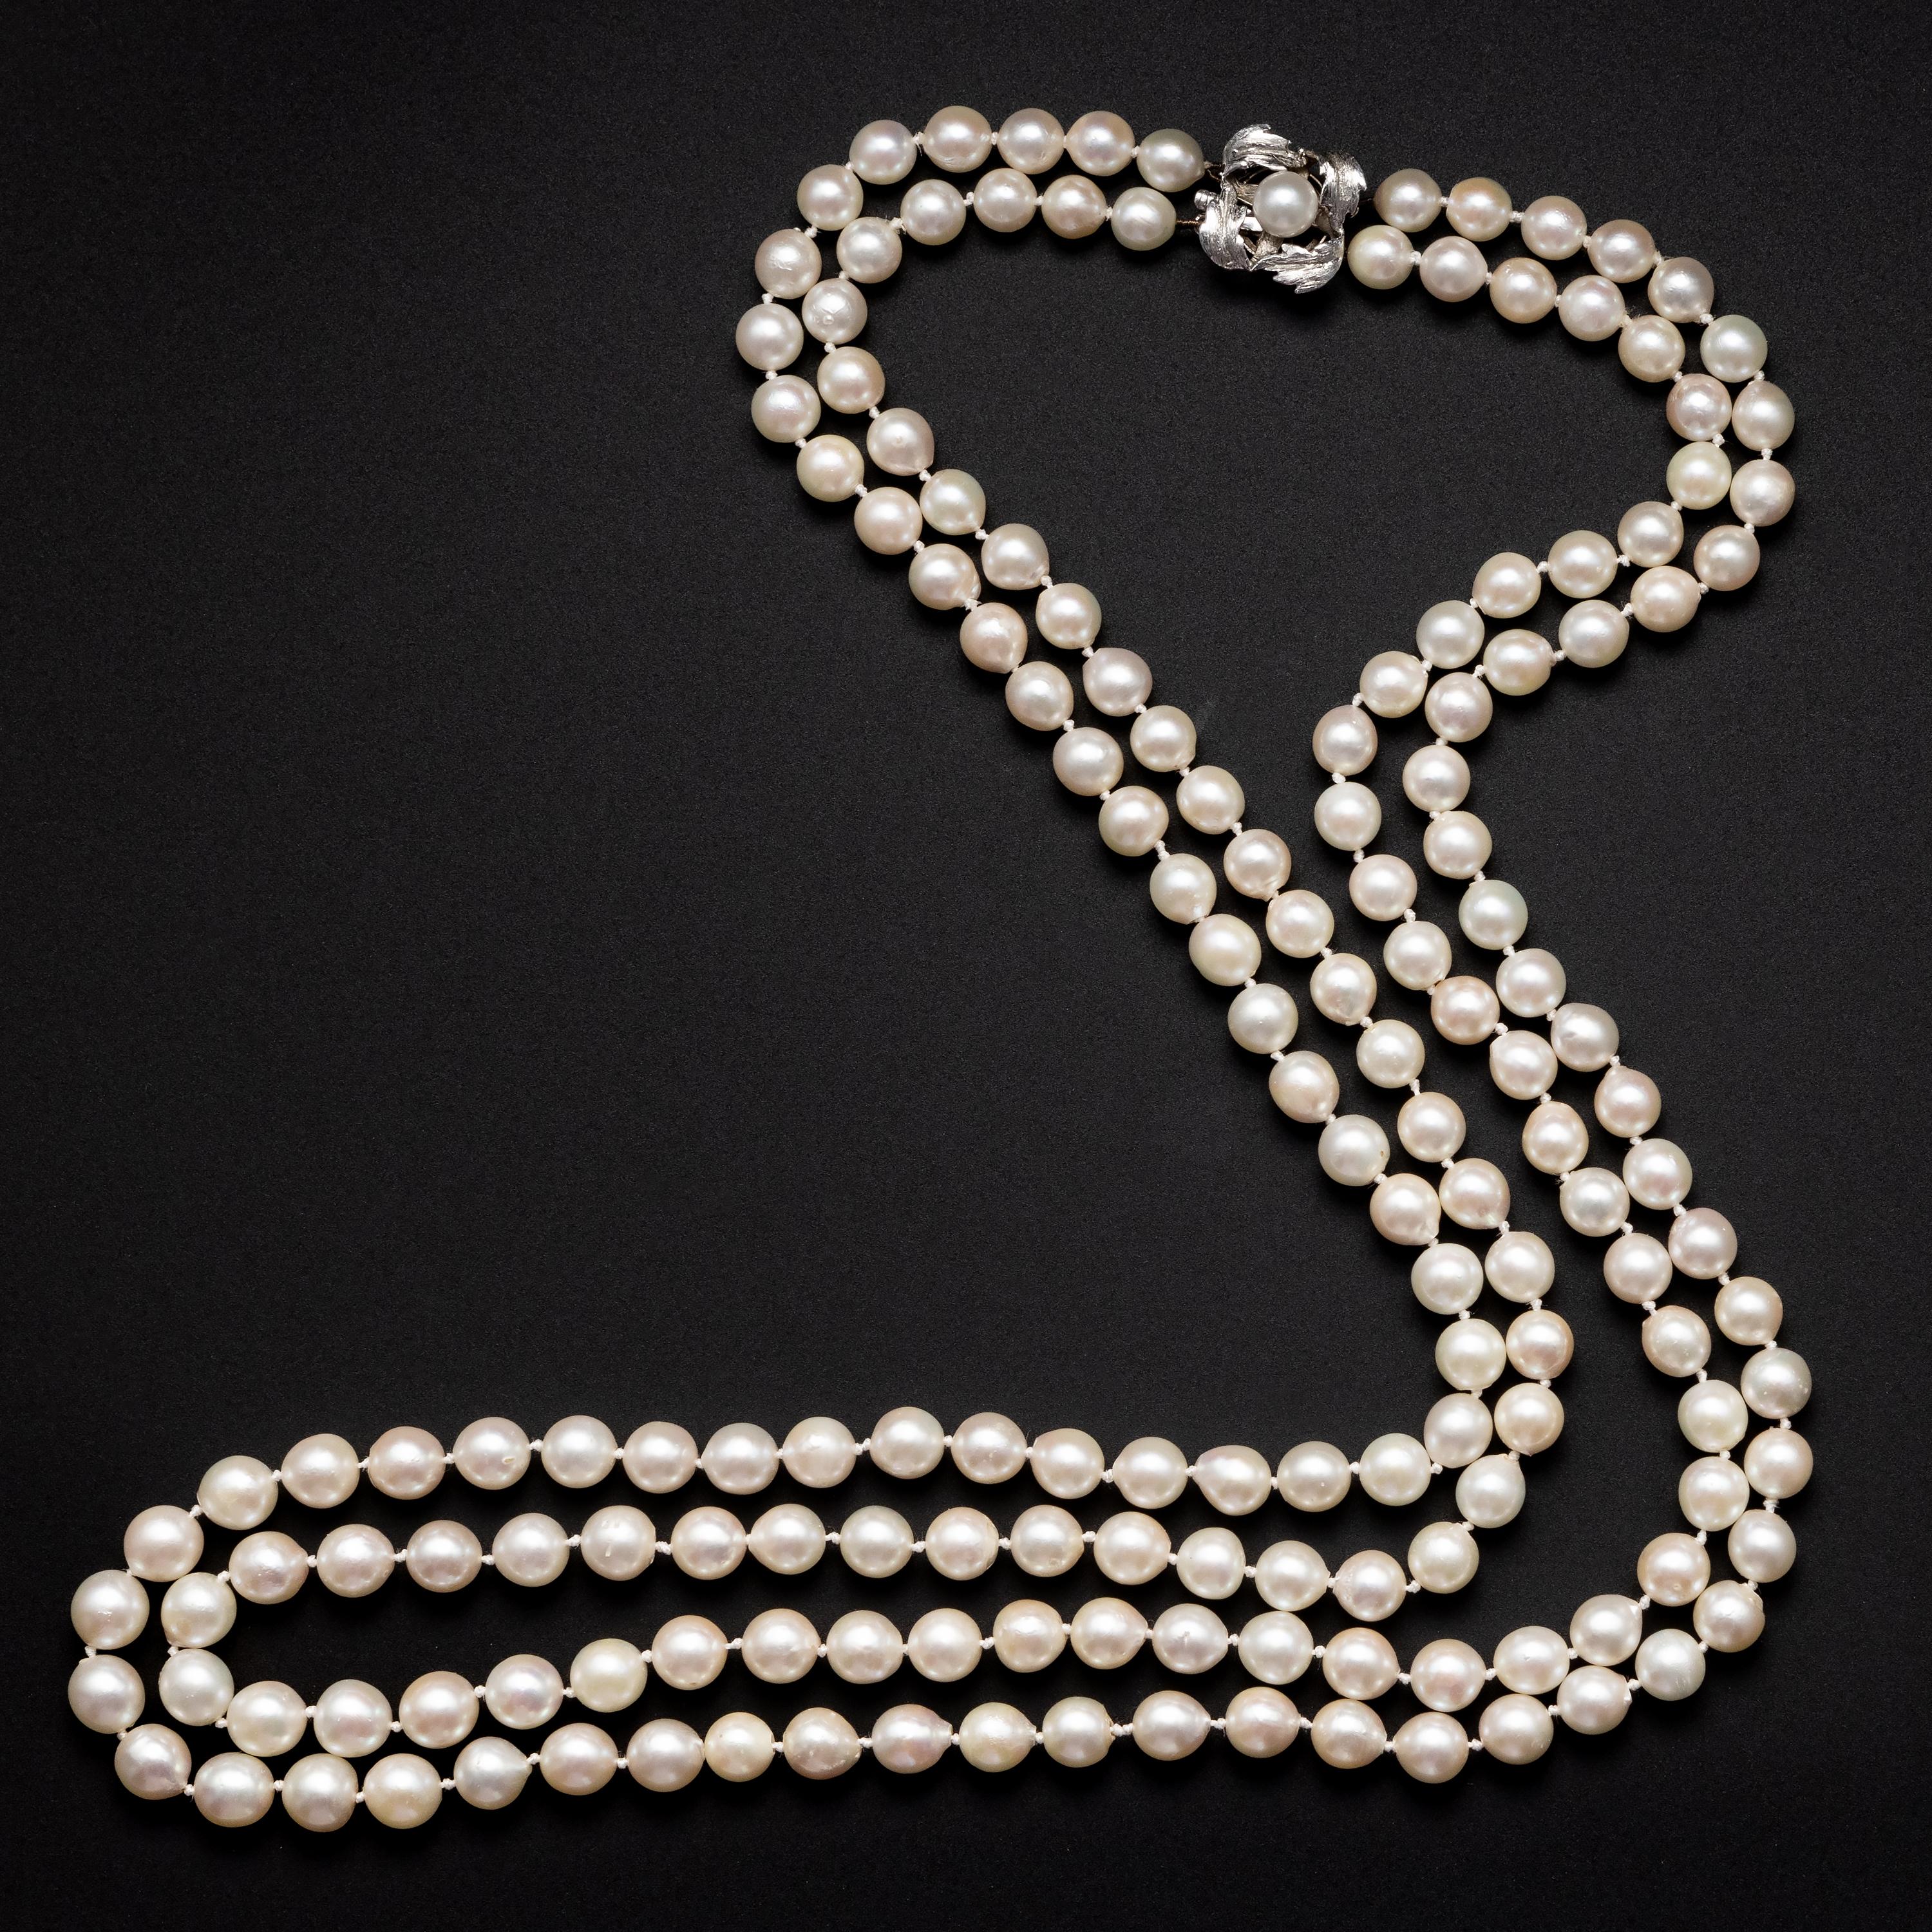 Offrez-vous le luxe quotidien d'un collier vintage en perles d'Akoya à deux brins. Ce bijou datant des années 1950 est composé de 170 perles de culture Akoya blanches, lustrées et presque rondes, dont la taille varie doucement de 6,5 mm à 7,5 mm.